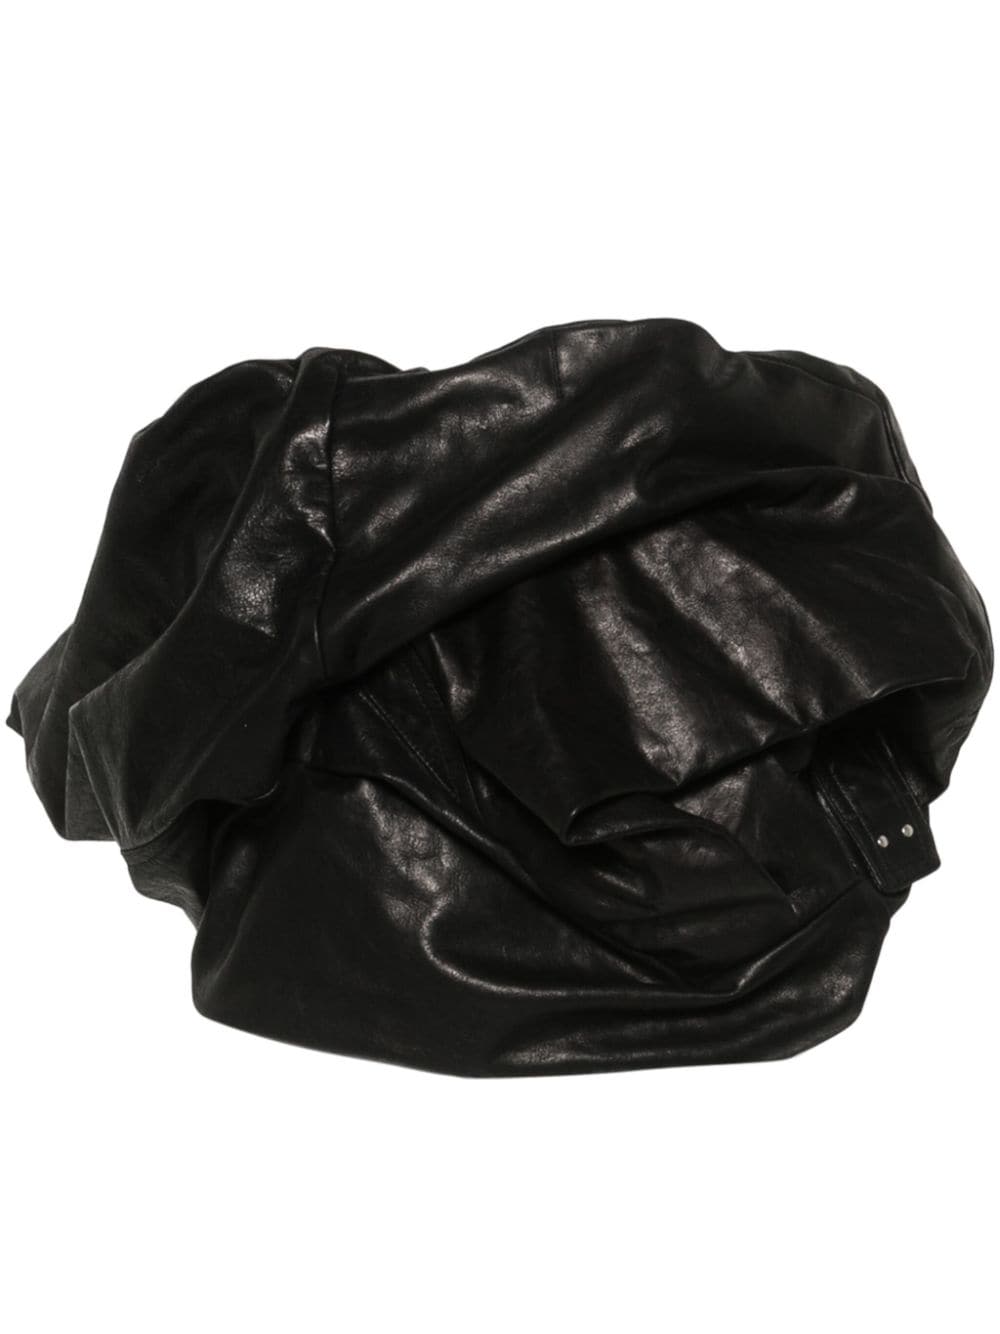 Áo đai da bó sát màu đen phong cách với thiết kế xếp tầng chéo